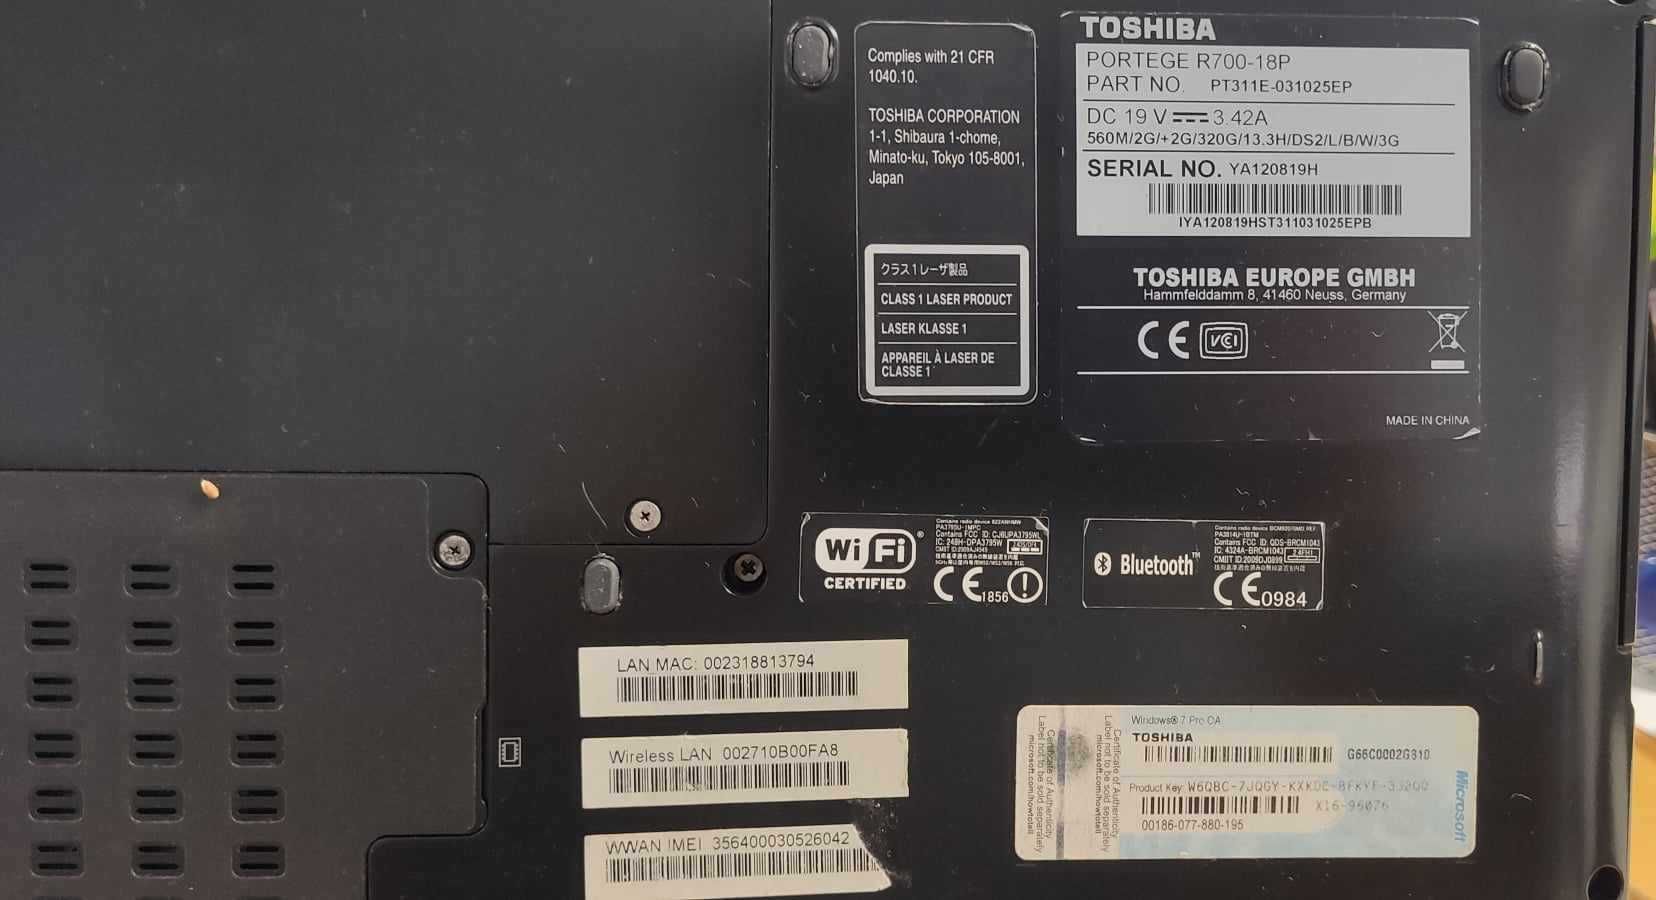 Portátil Toshiba R700-1P